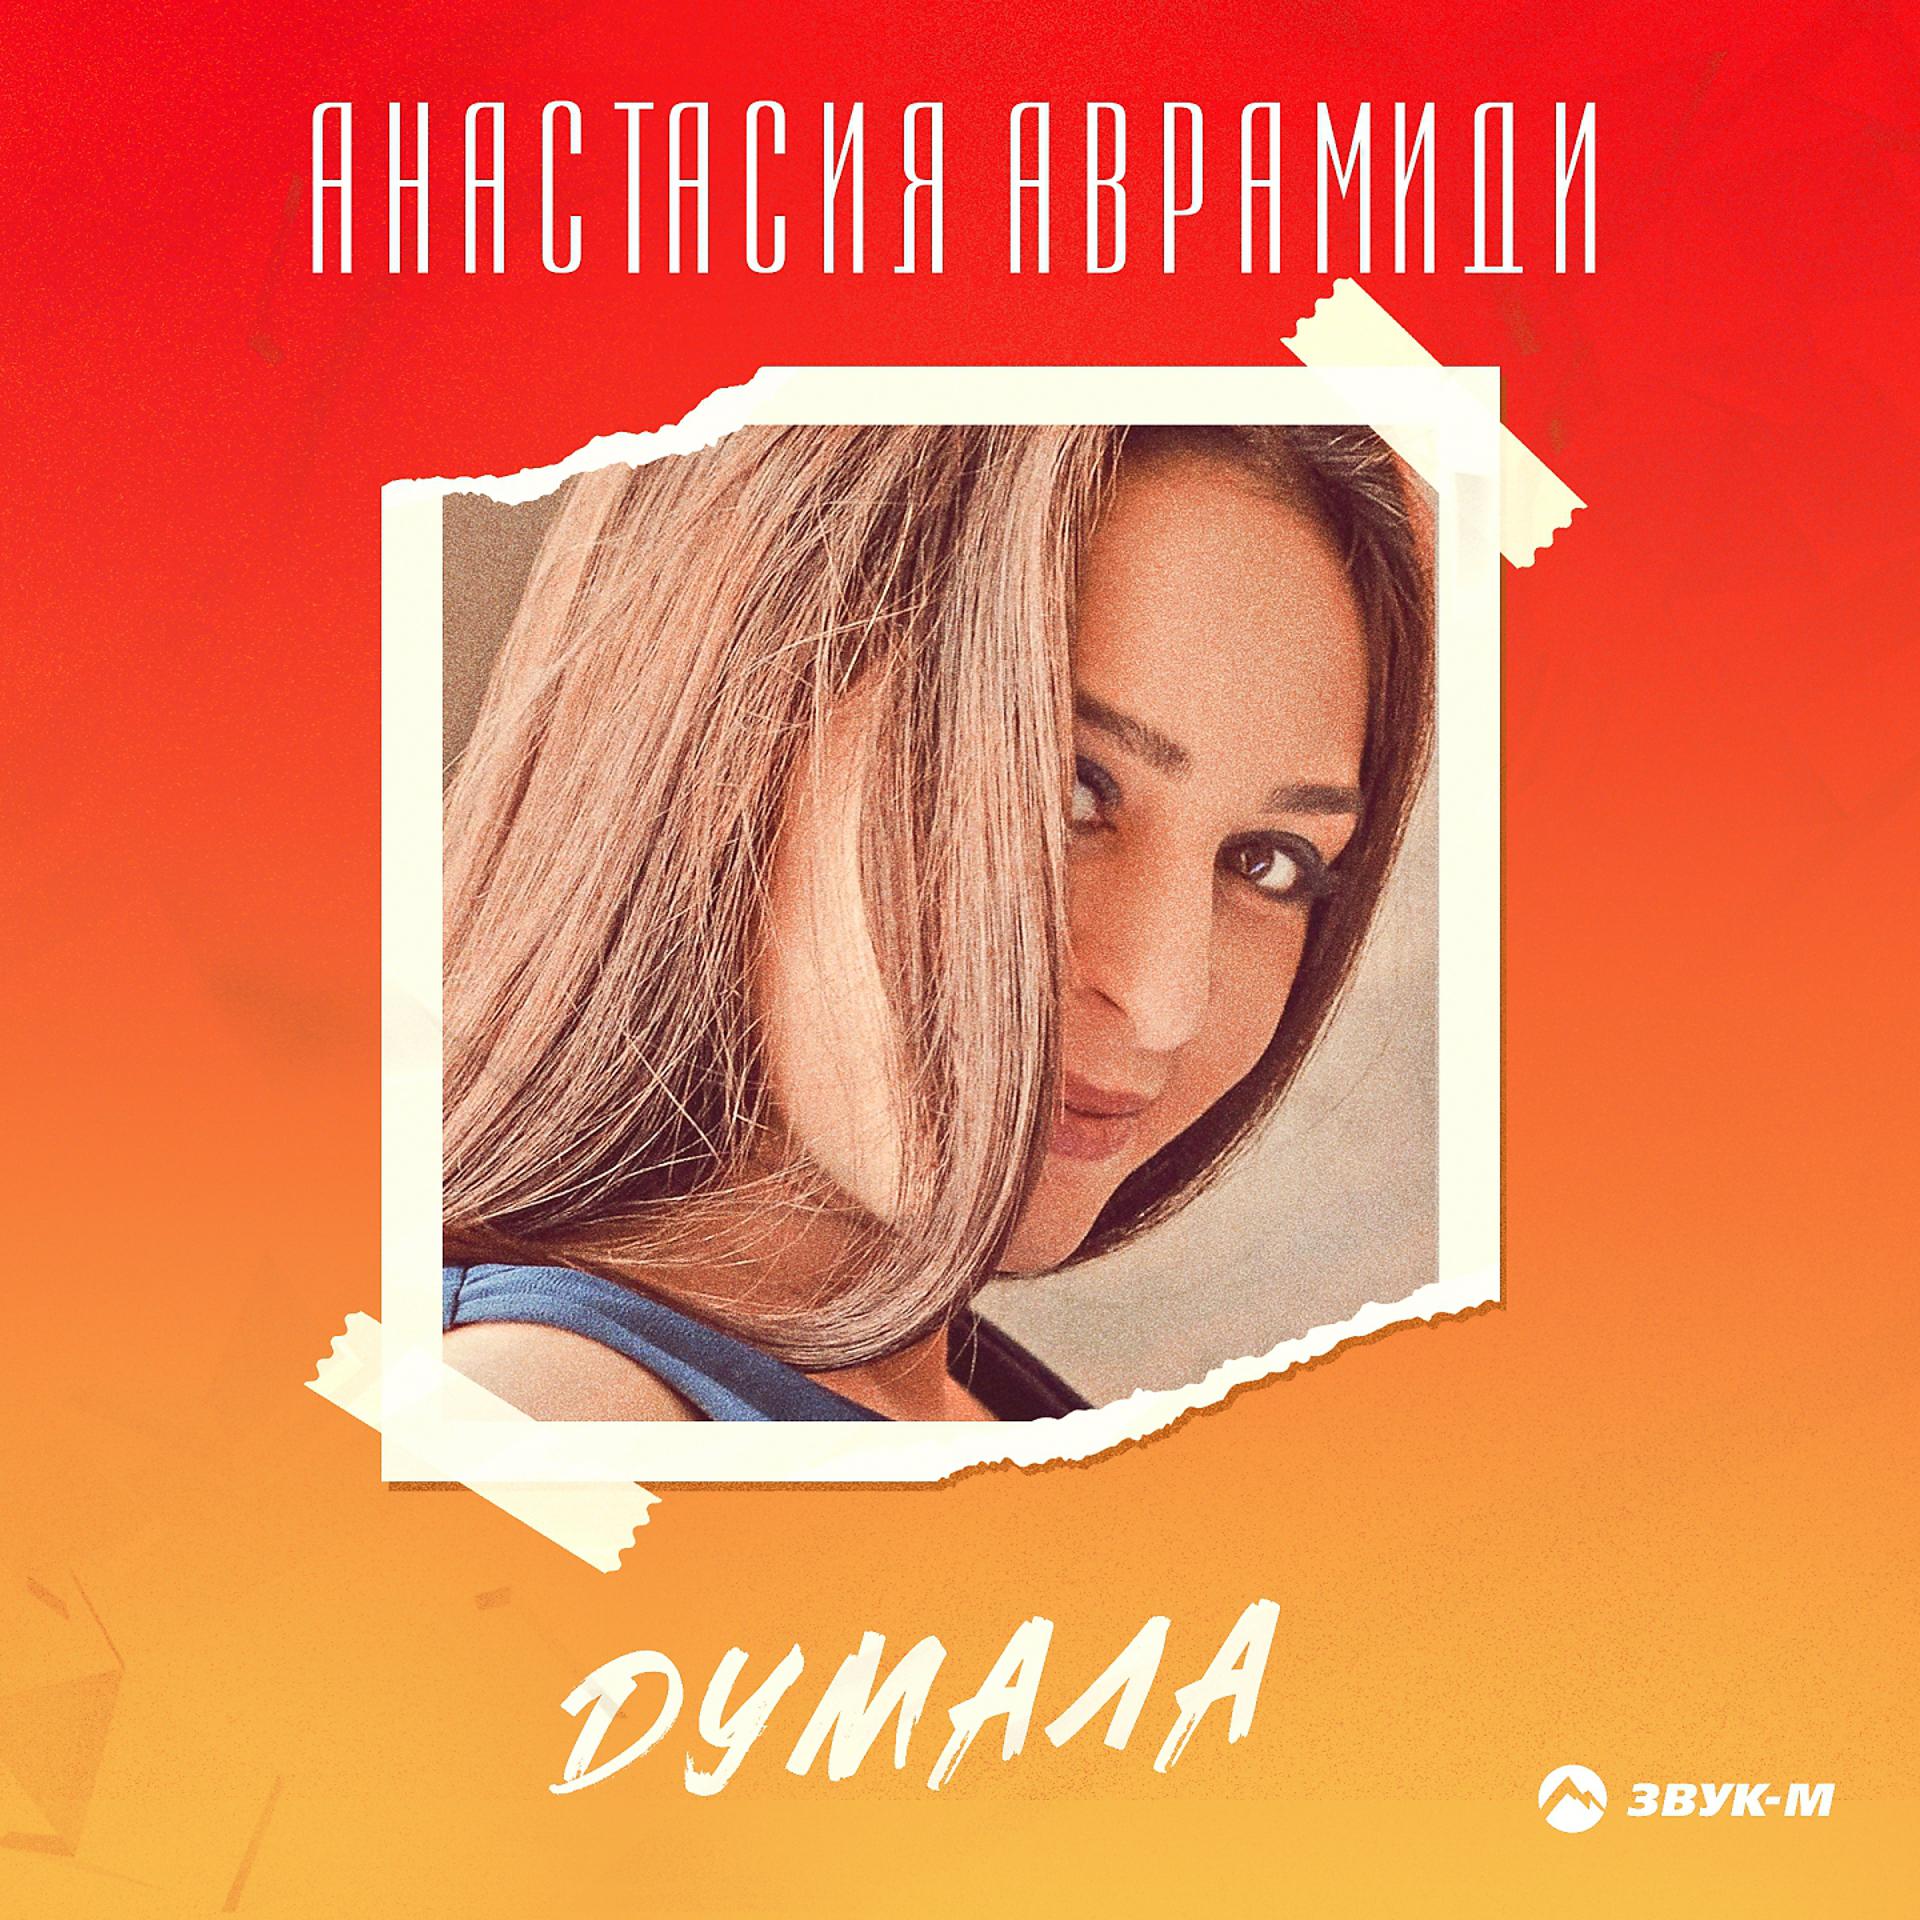 Постер к треку Анастасия Аврамиди - Думала